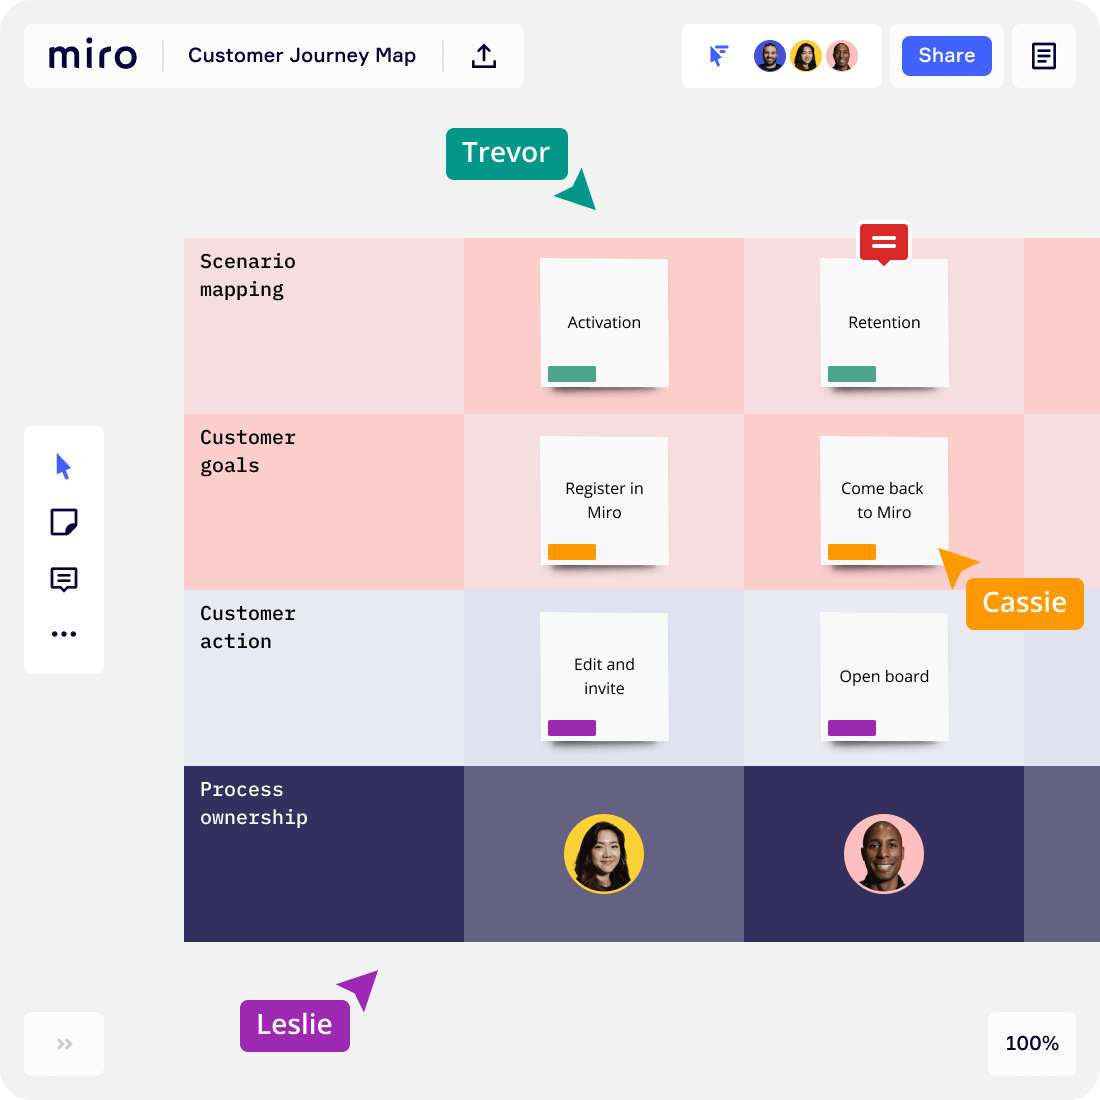 miro customer journey map